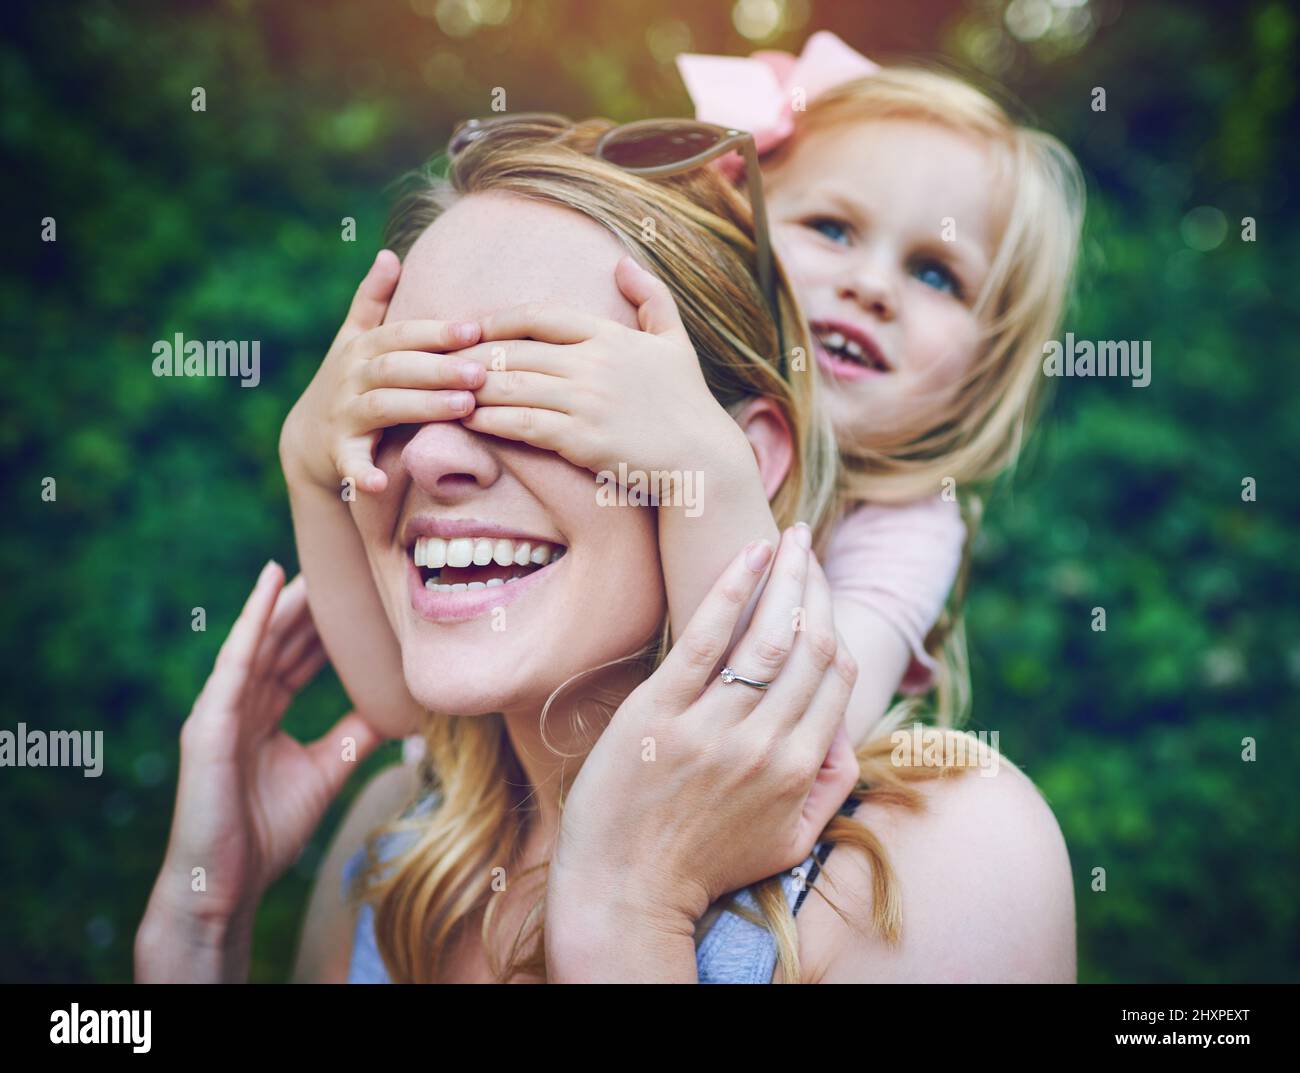 Jetez un coup d'œil, devinez qui. Photo d'une adorable petite fille qui enveloppe ses yeux de mères en plein air. Banque D'Images